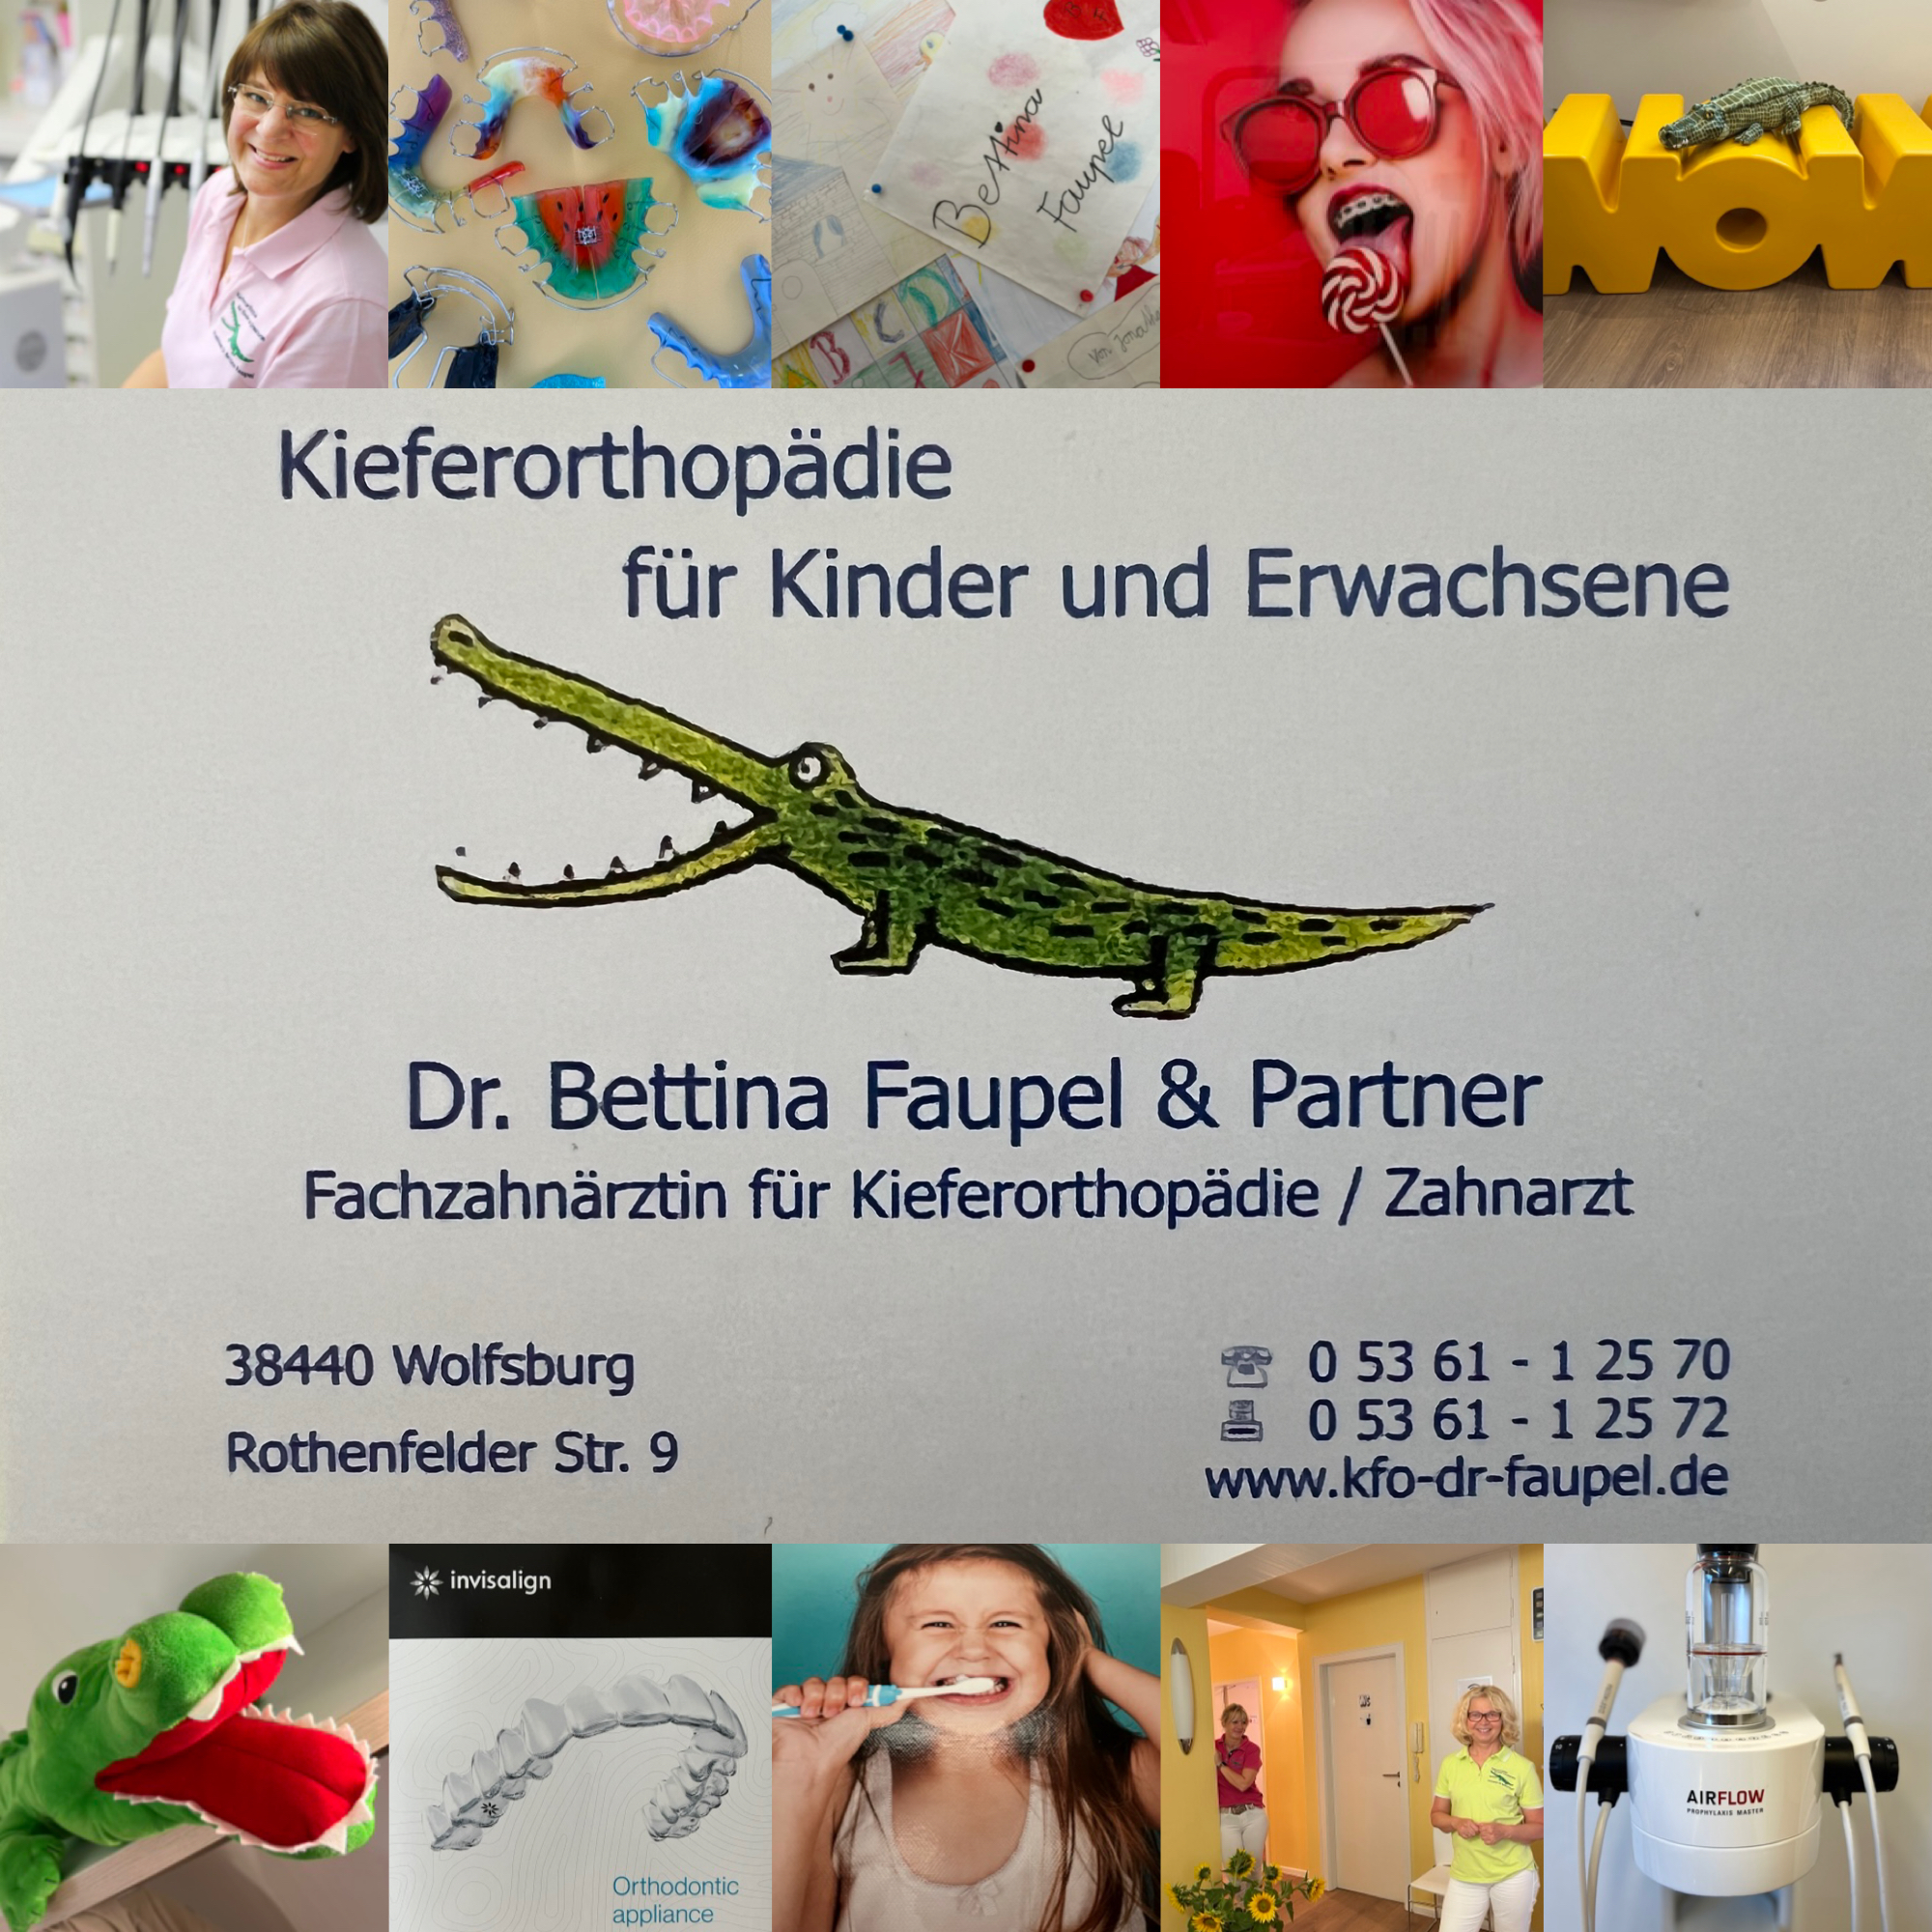 Dr. Bettina Faupel